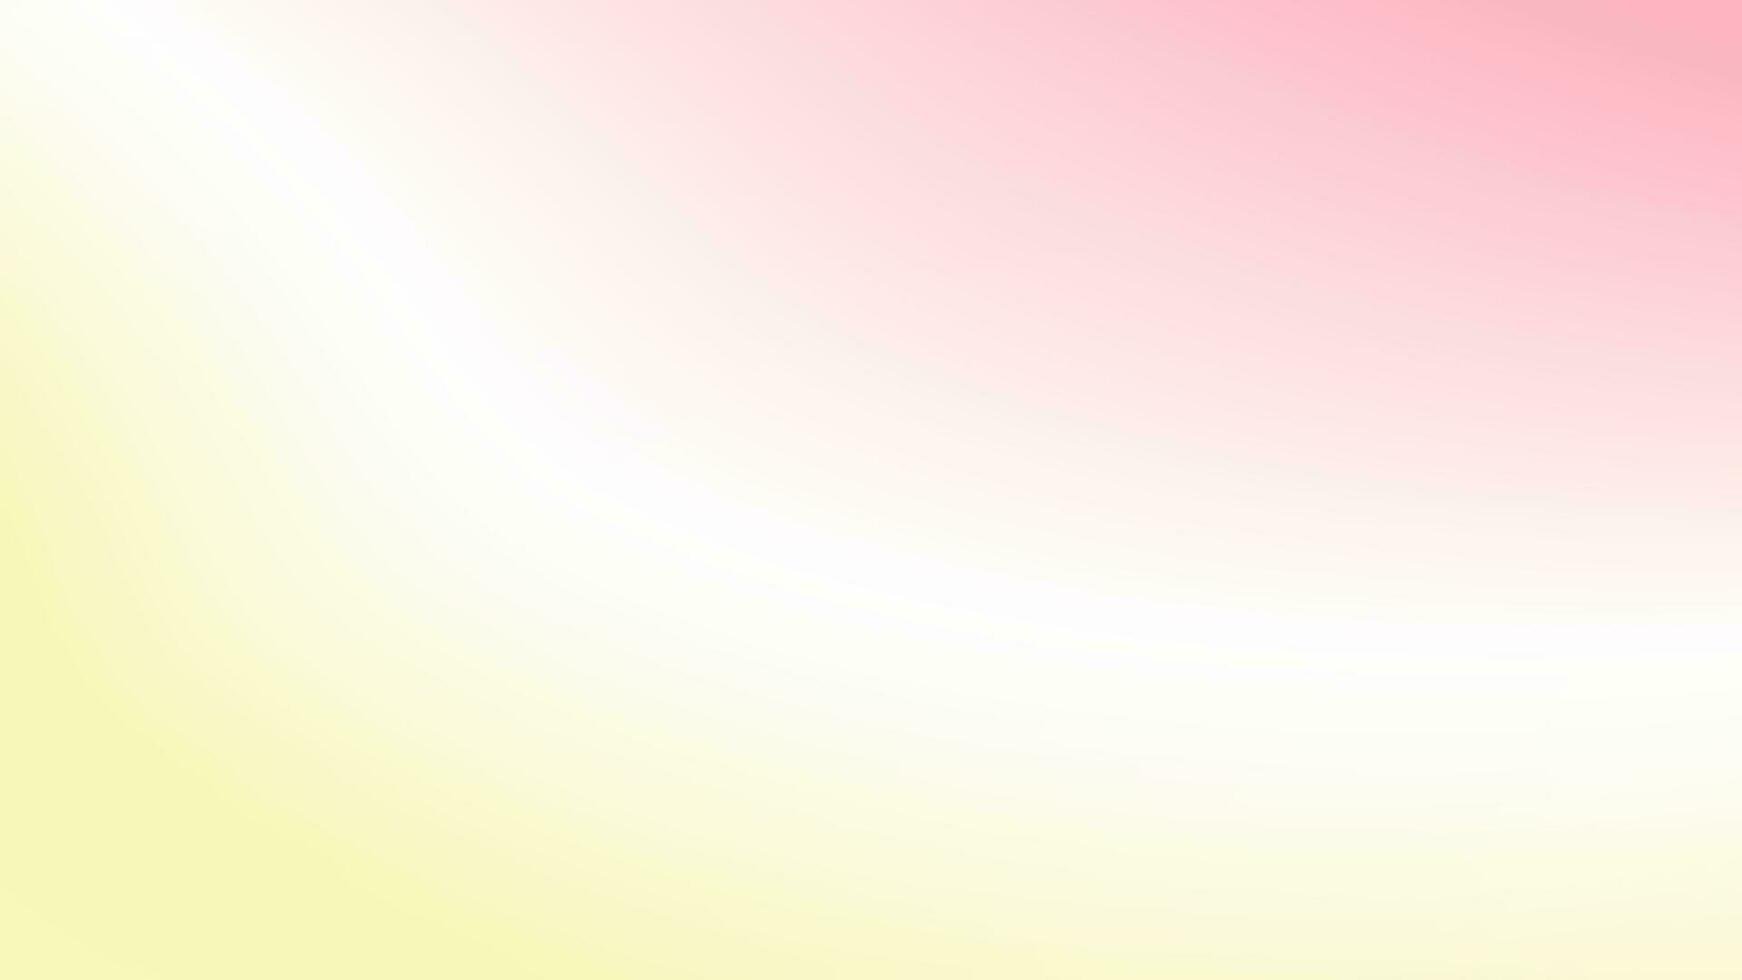 rosa, blanco, amarillo, de colores degradado antecedentes. vector ilustración